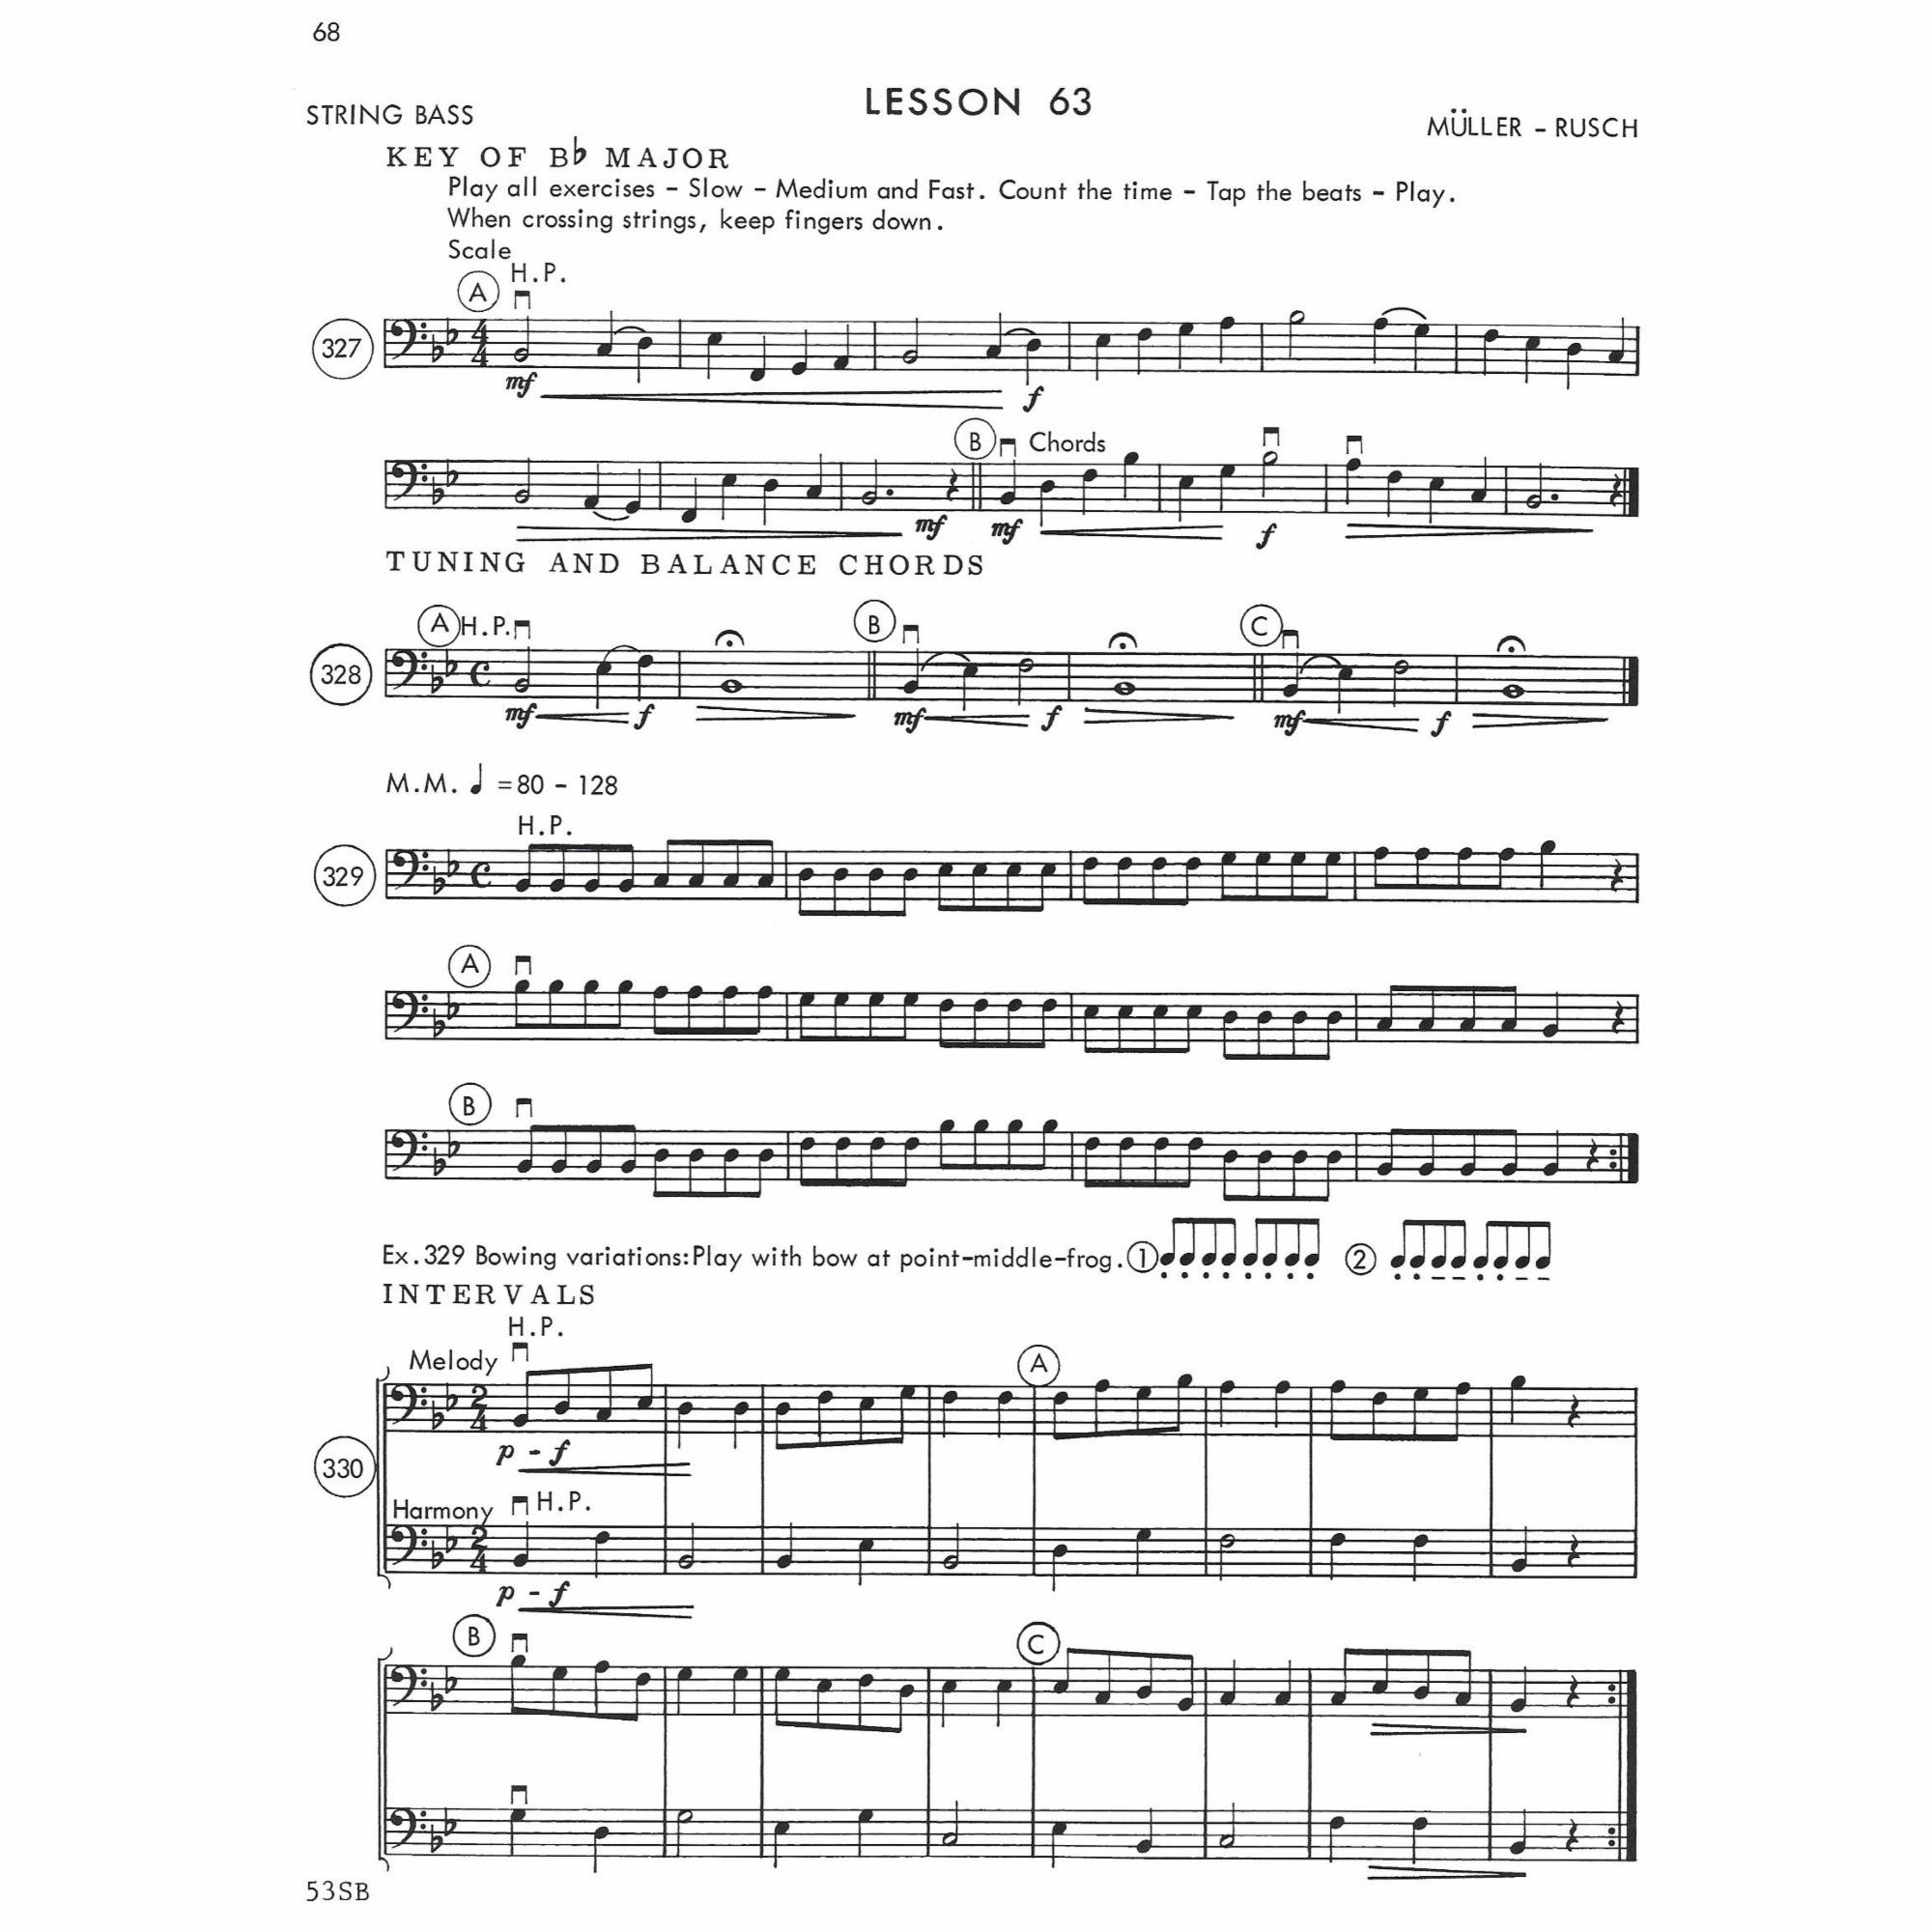 Sample: Bass (Pg. 2/66)